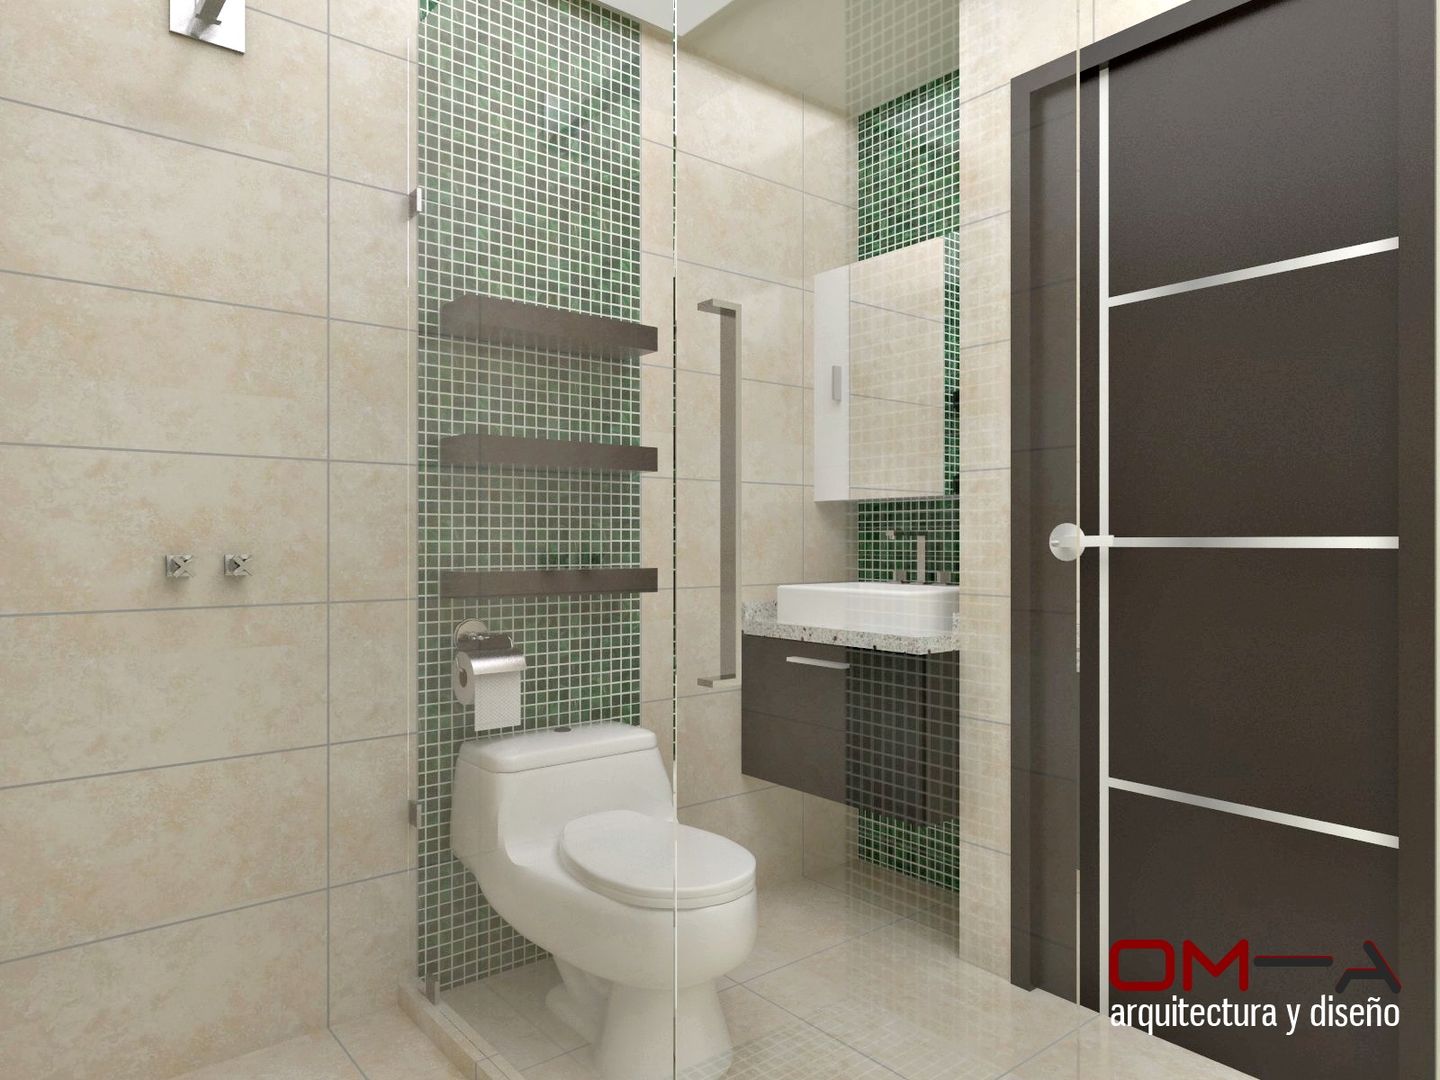 Diseño interior en apartamento, espacio baño secundario om-a arquitectura y diseño Baños de estilo moderno